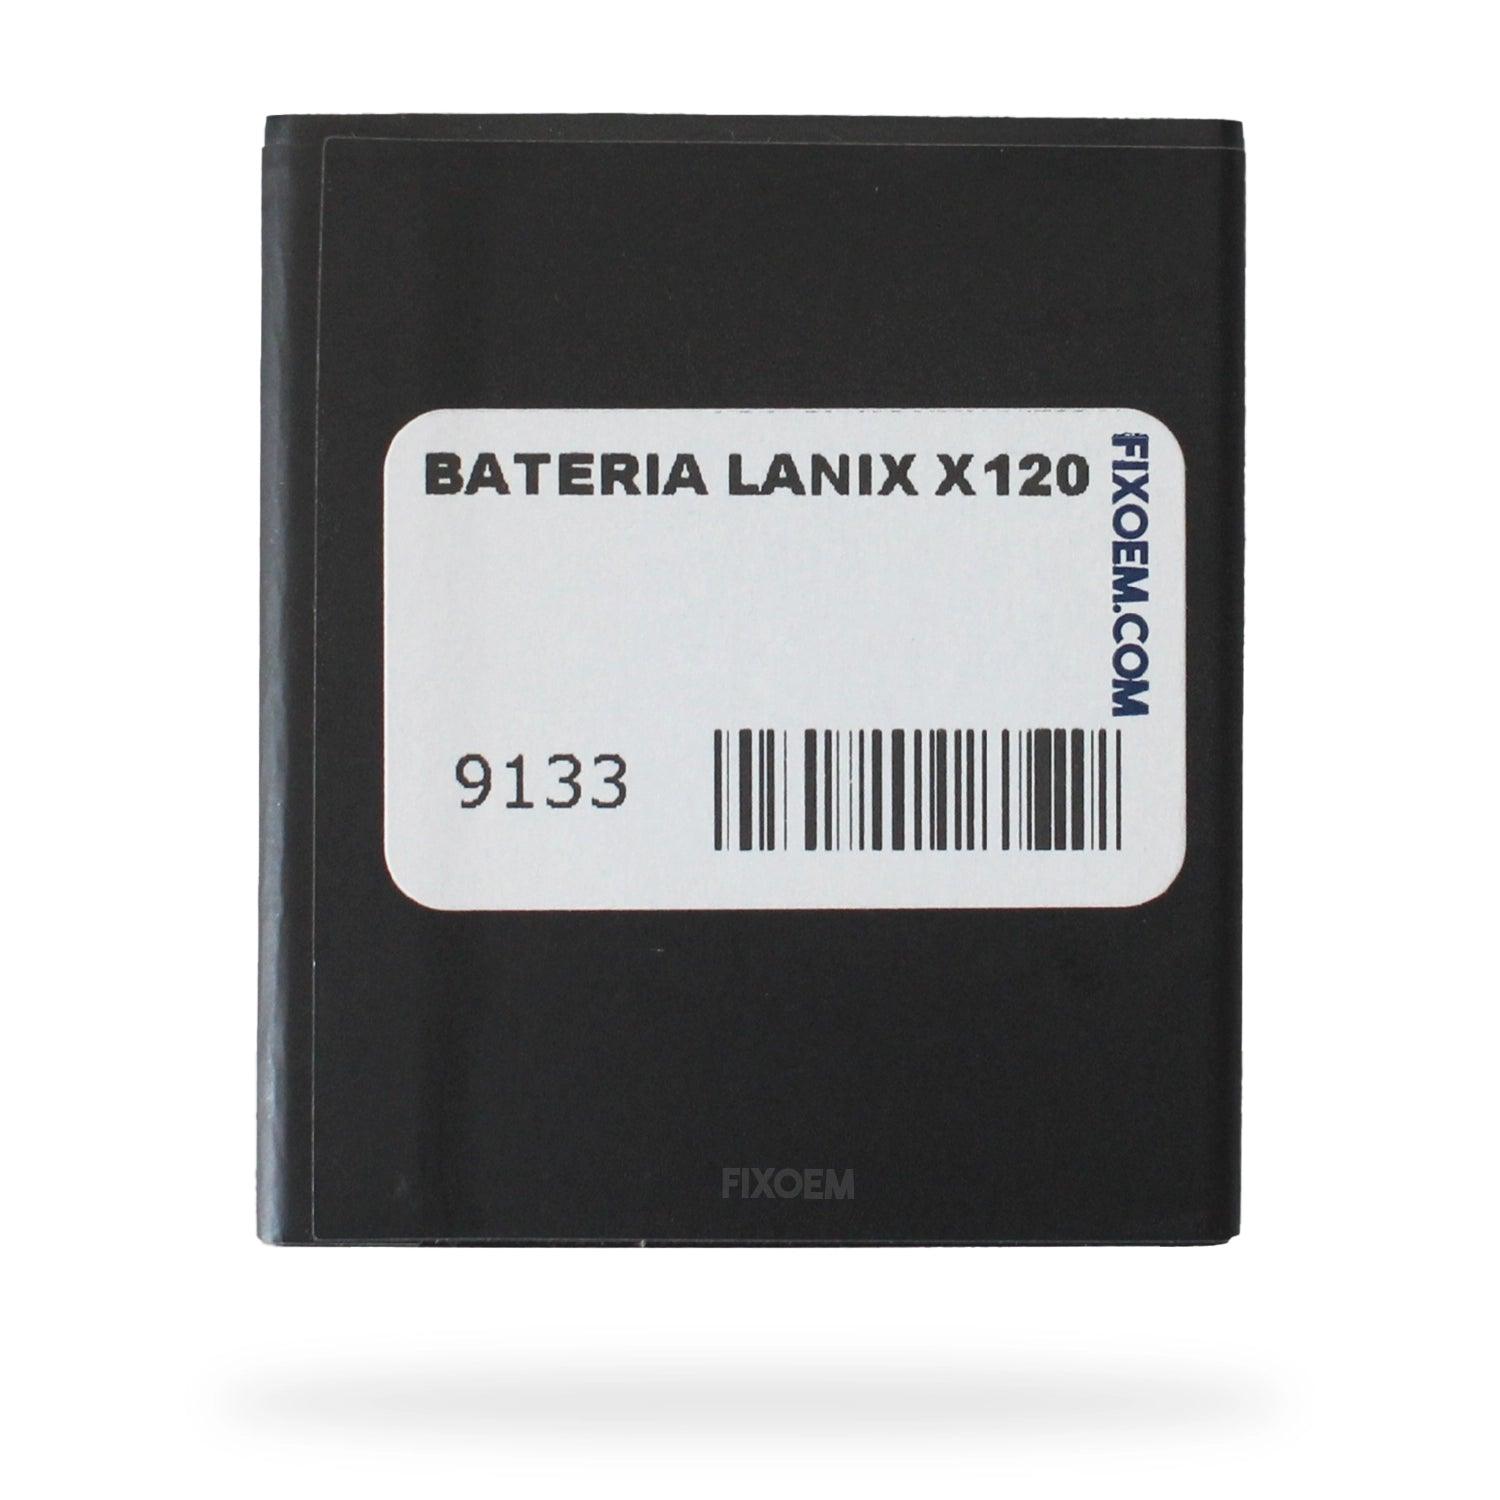 Bateria Lanix Ilium X120-Bat. a solo $ 110.00 Refaccion y puestos celulares, refurbish y microelectronica.- FixOEM